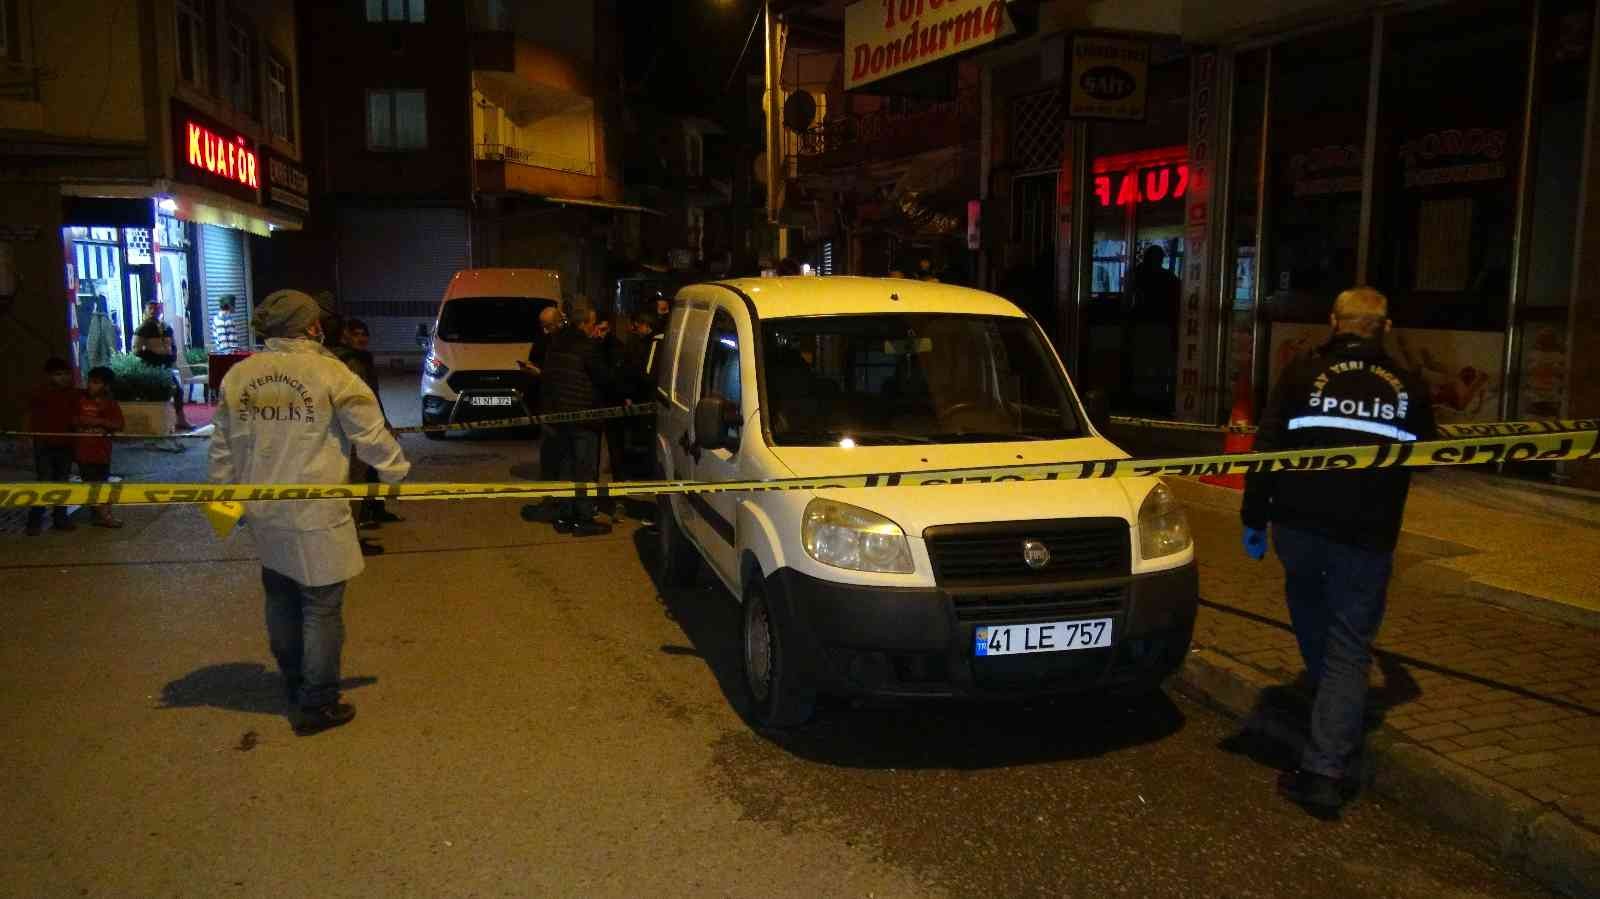 İki grubun pompalı tüfekli kavgası yoldan geçen kadını yaraladı #kocaeli